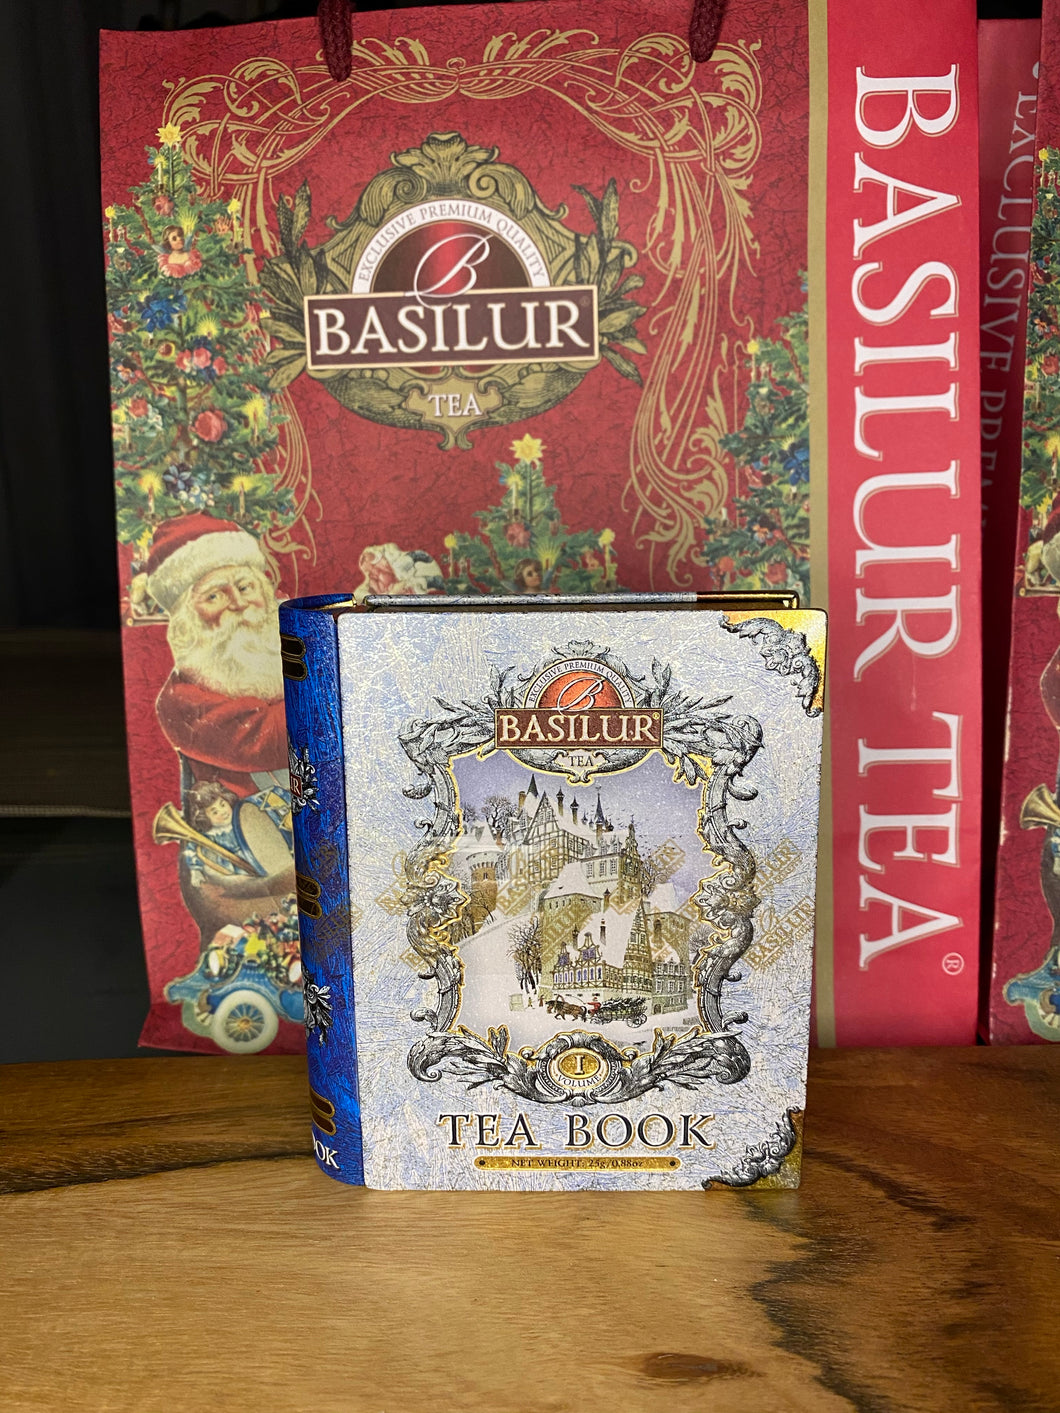 Winter Tea Book Vol I -25g (mini tea book) or 100g